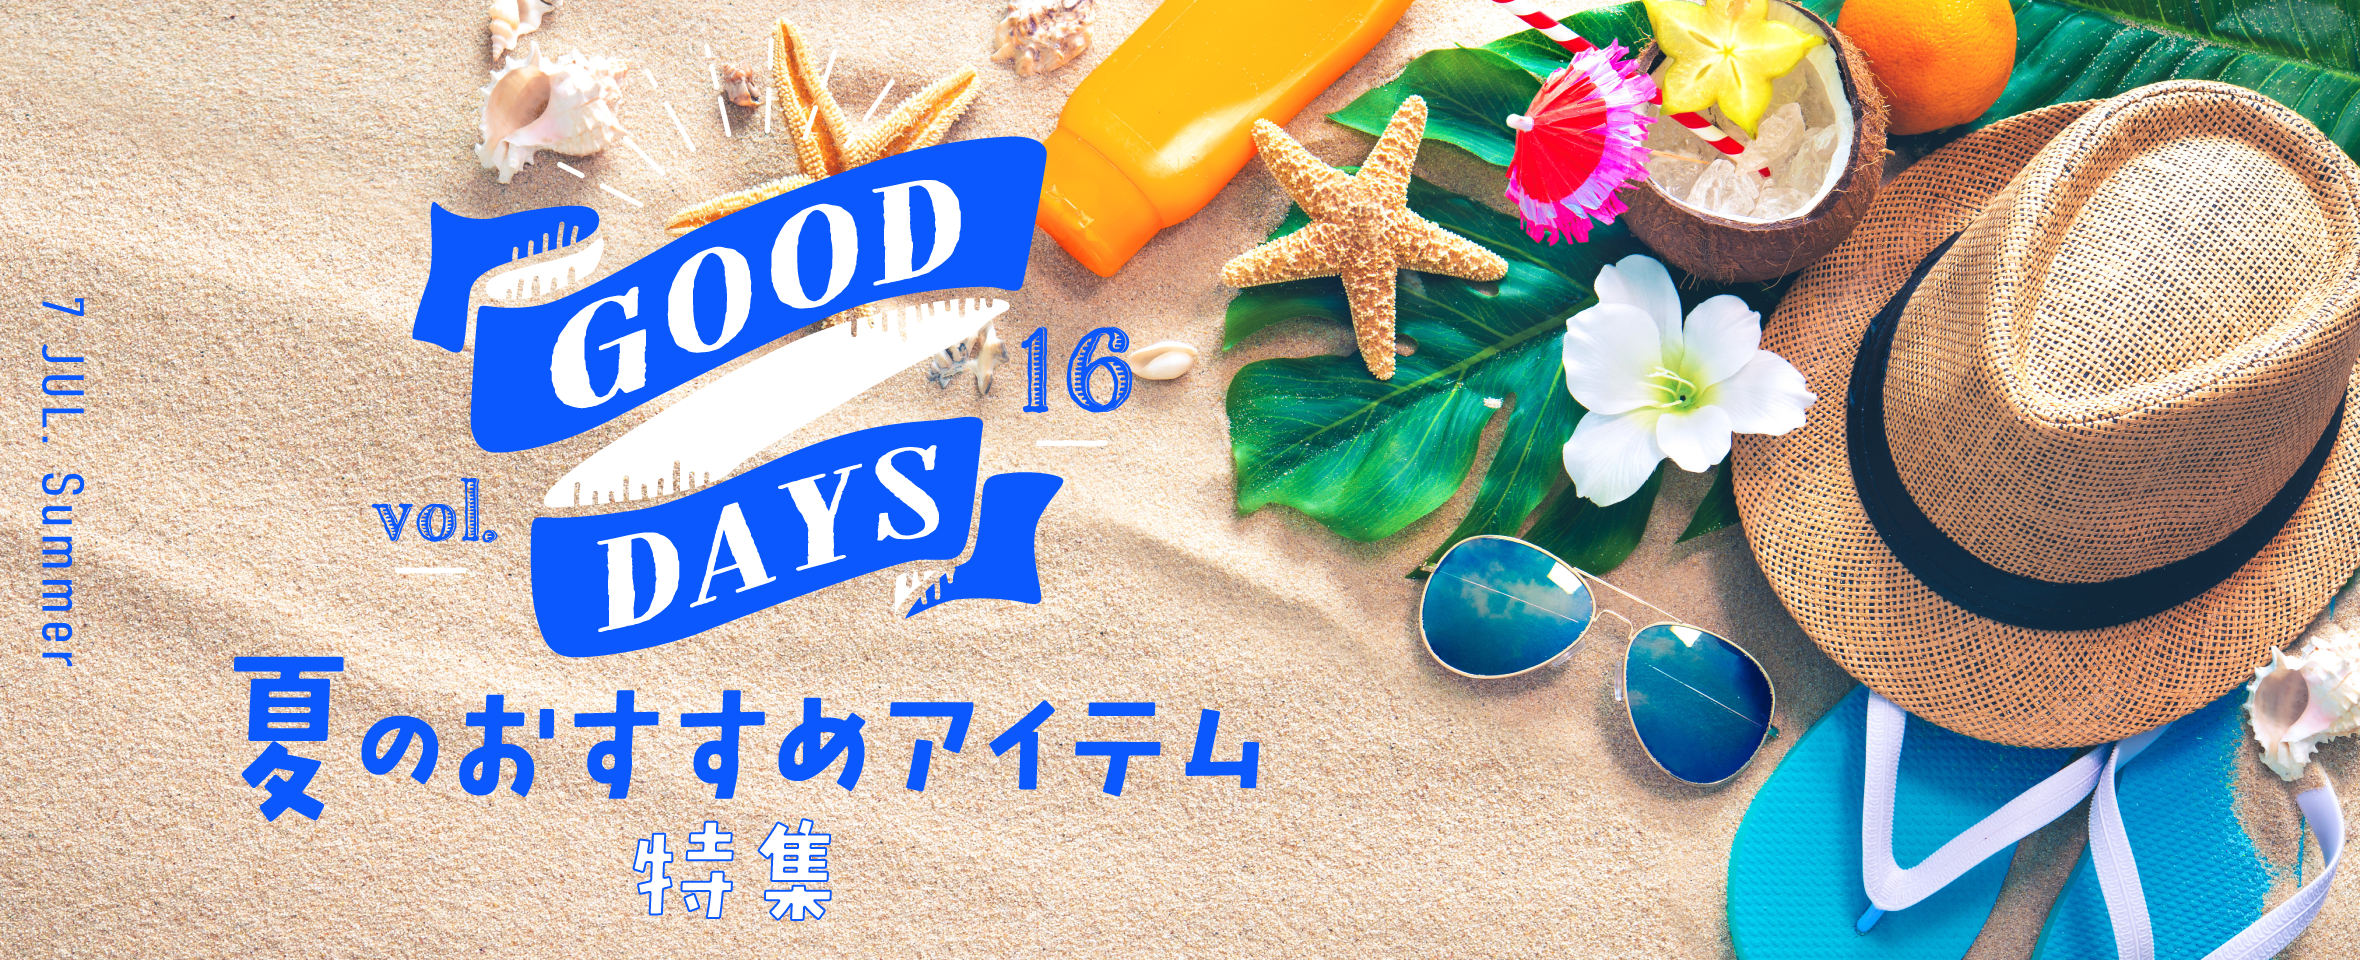 GOOD DAYS Vol.16 夏のおすすめアイテム 特集